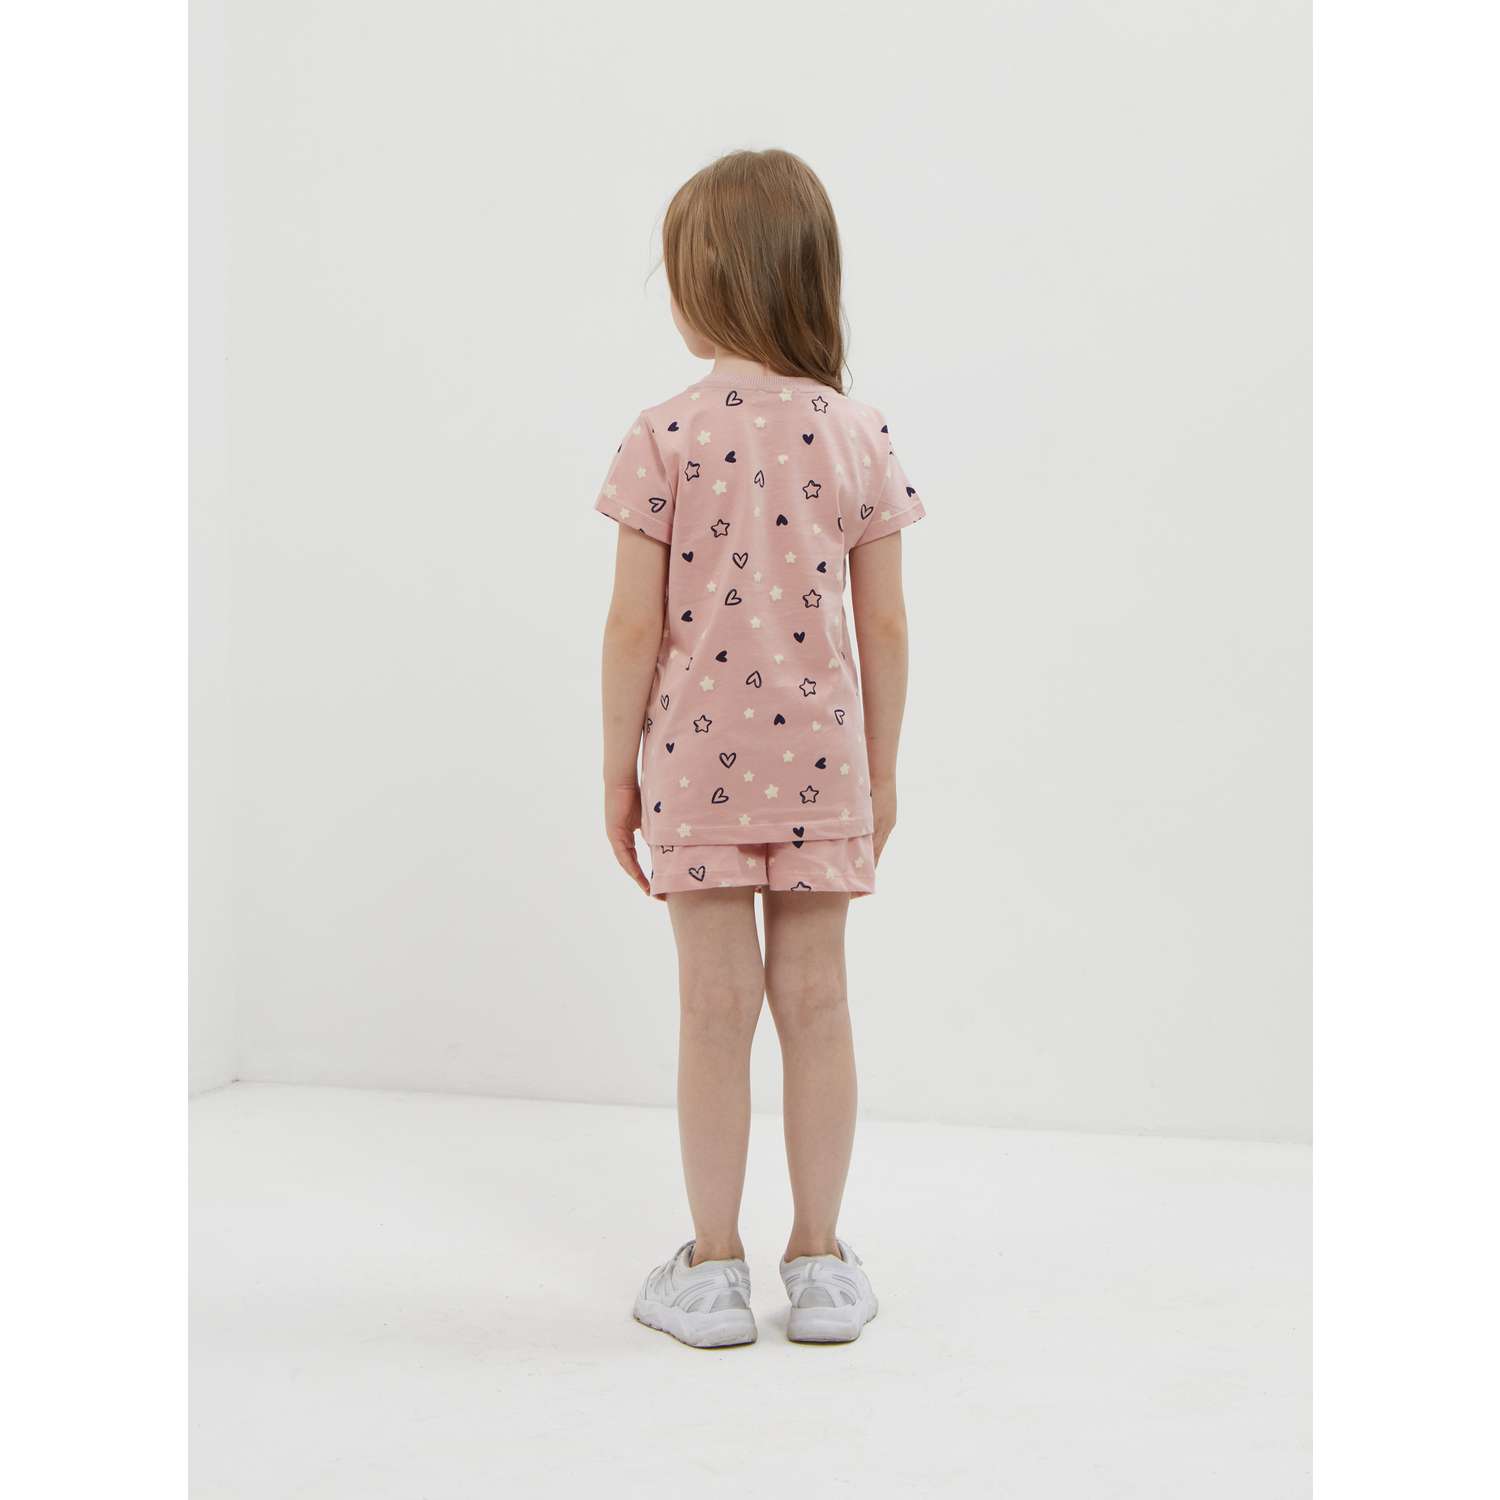 Пижама ISSHOP пижама с шортами розовая - фото 2